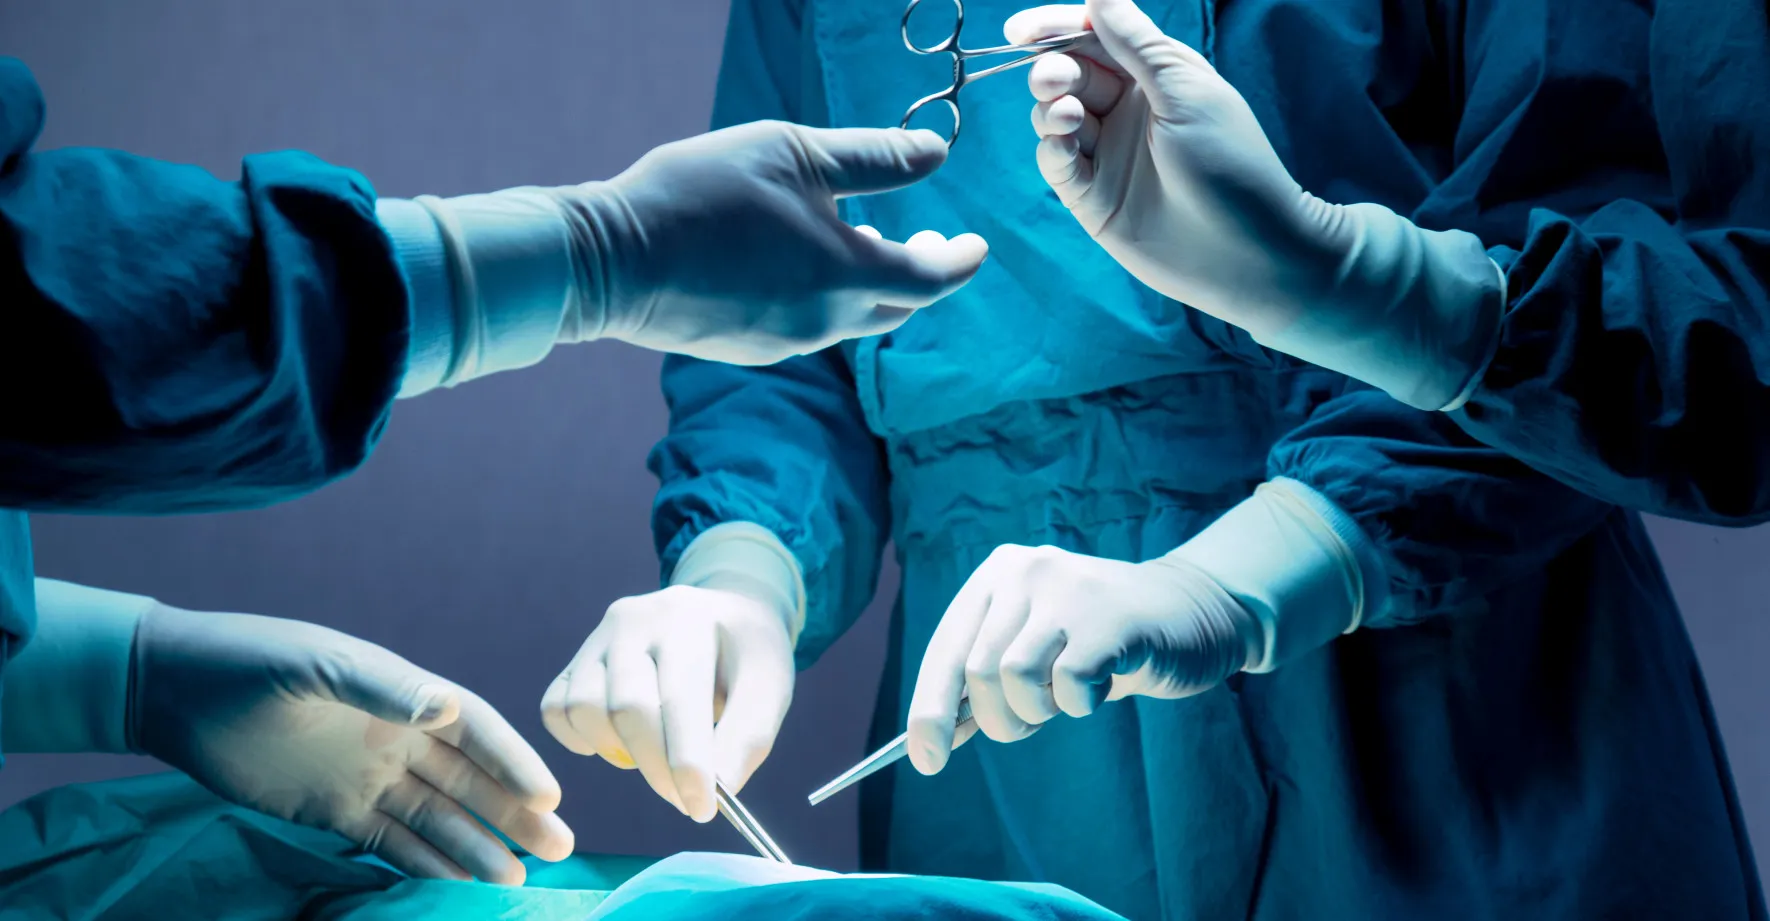 Implantáty z mrtvol měli dávat živým, kteří je nepotřebovali. Skupina rumunských lékařů čelí vyšetřování